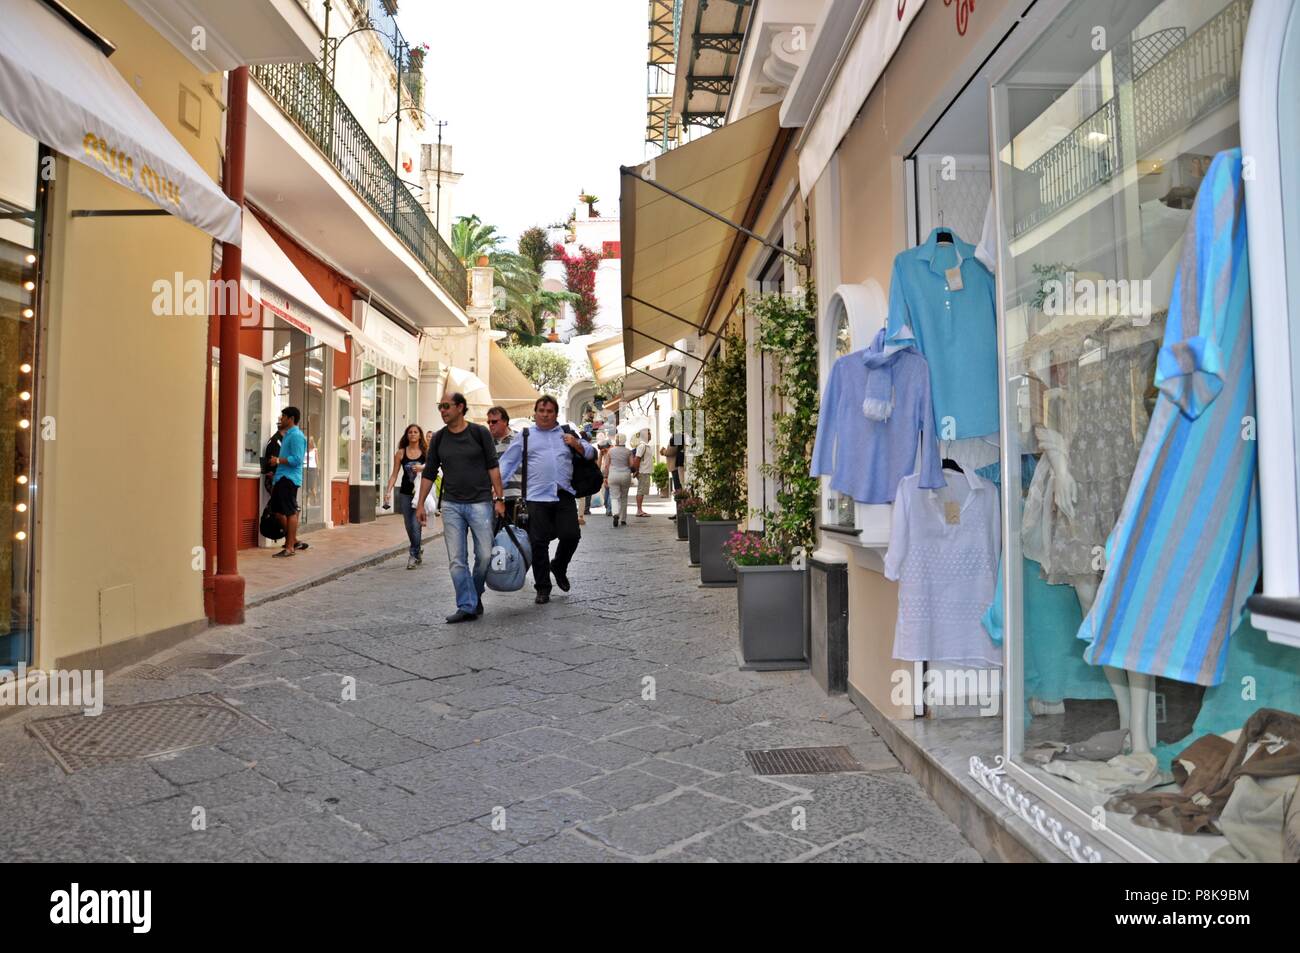 Capri, Italie - 18 mai 2013 : Les gens de marcher sur la rue commerçante avec boutiques sur les côtés gauche et droit Banque D'Images